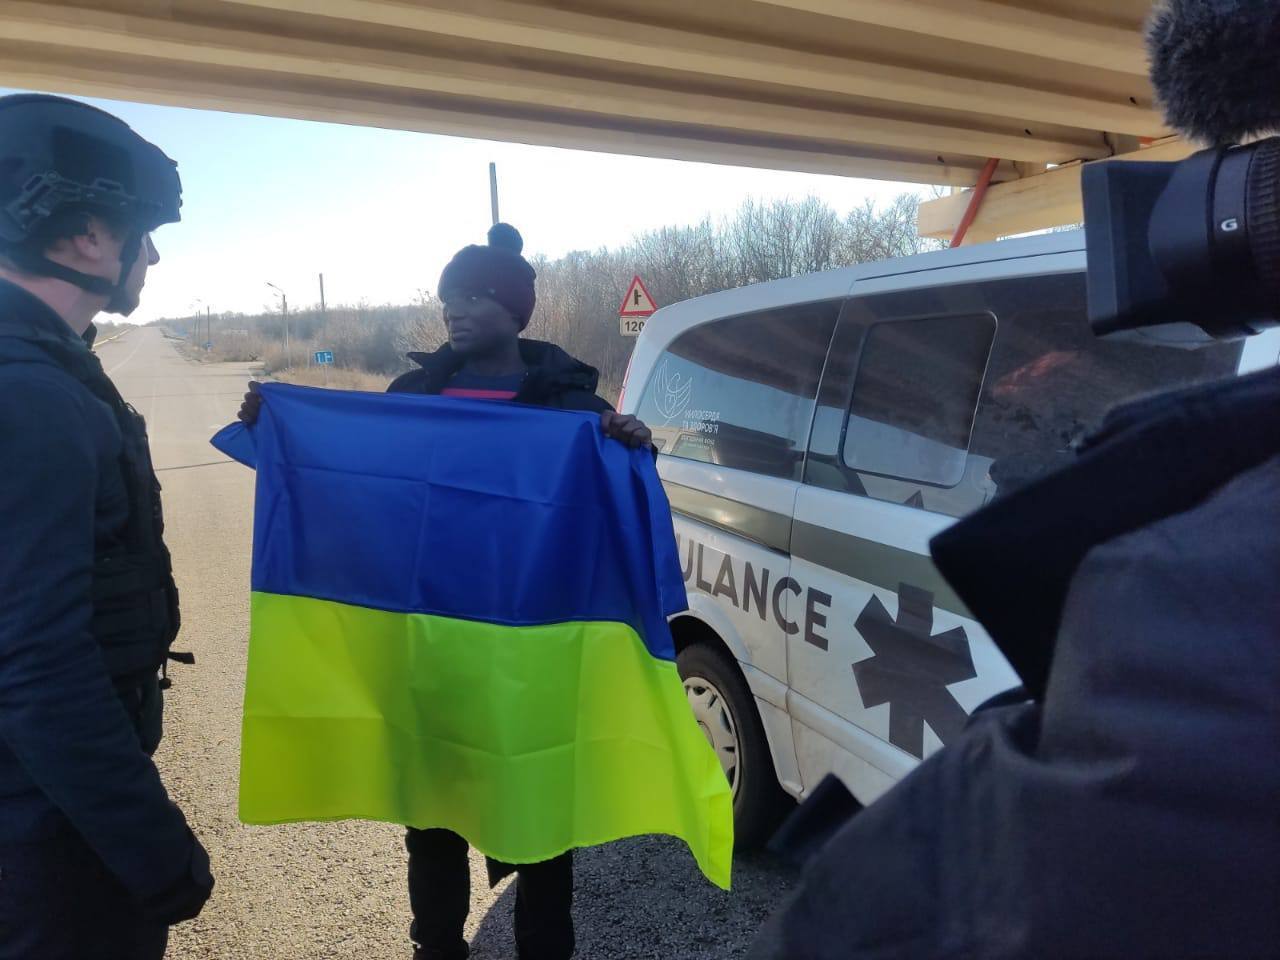 ГУР: Україна обміняла священника УПЦ МП на американського активіста, полоненого окупантами в Херсоні